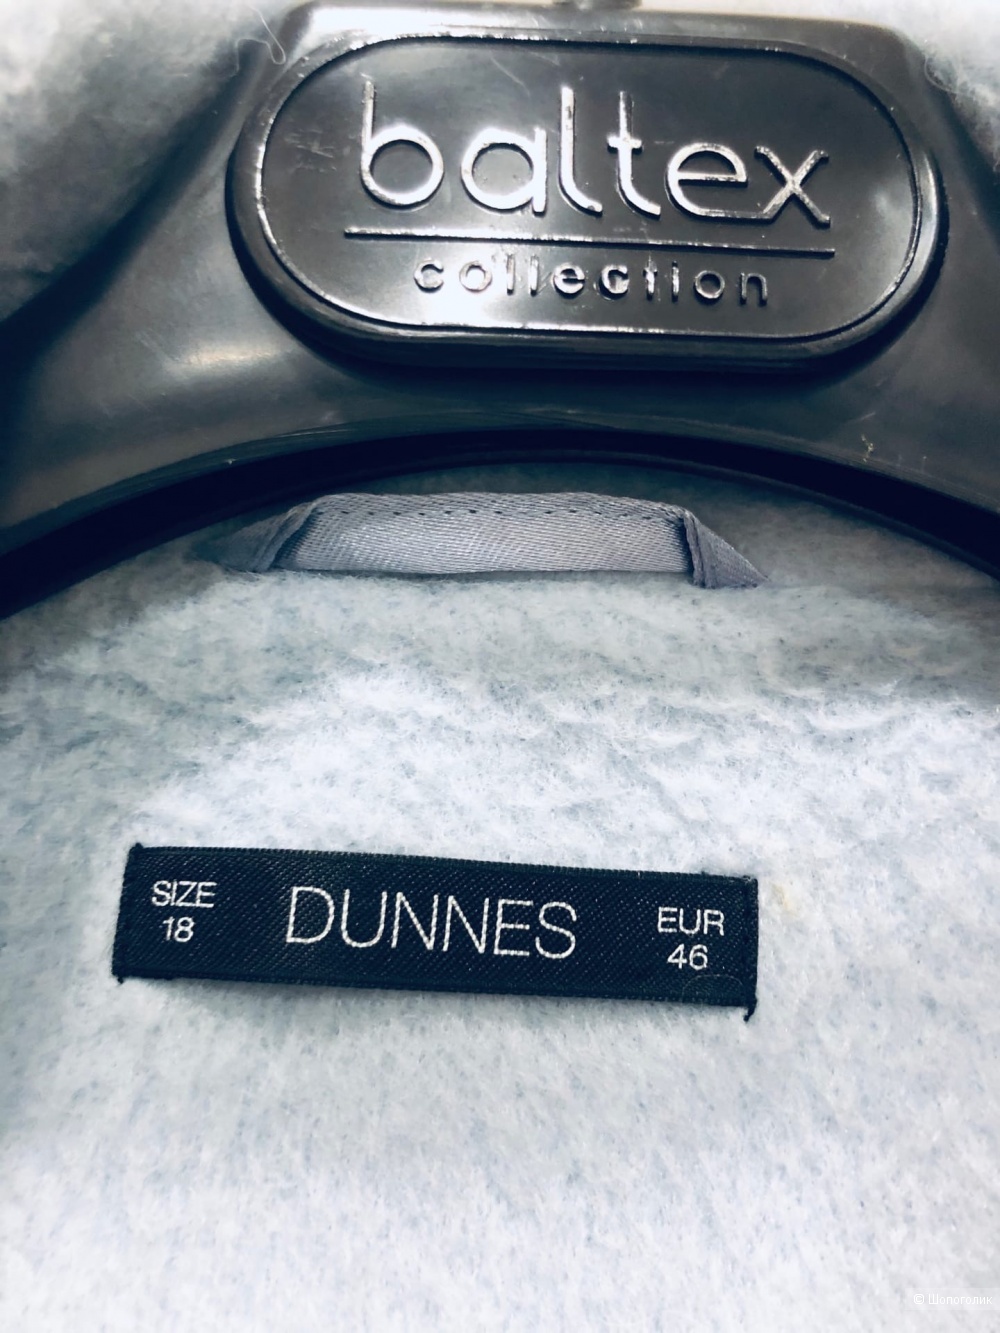 Пальто Dunnes Stores. Размер 48-50-52.